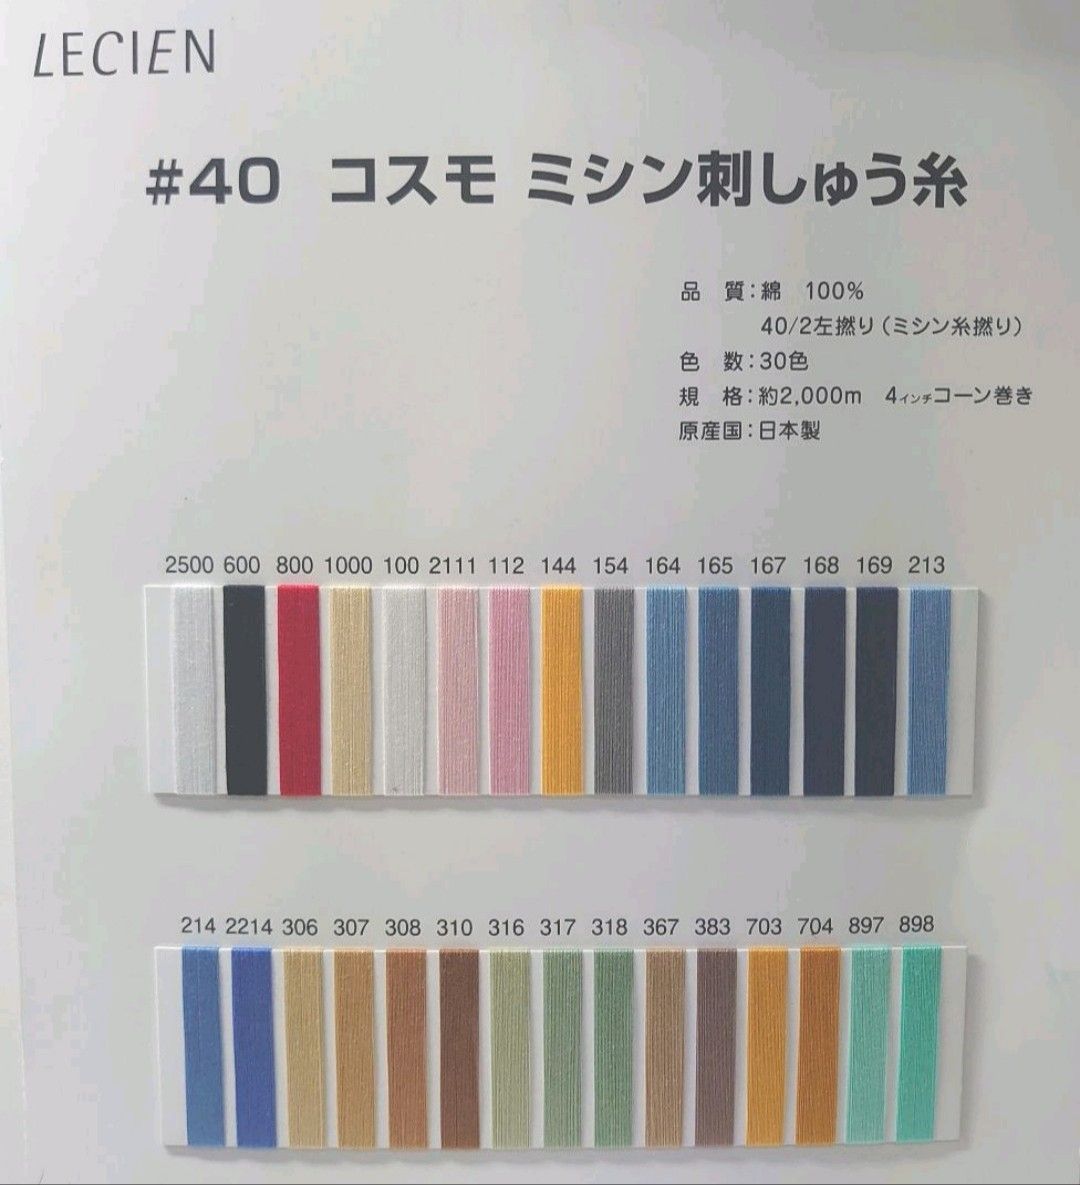 25番刺繍糸 col.776COSMO刺繍糸 コスモ 25番糸 lecien棉 光沢感 高級超長綿